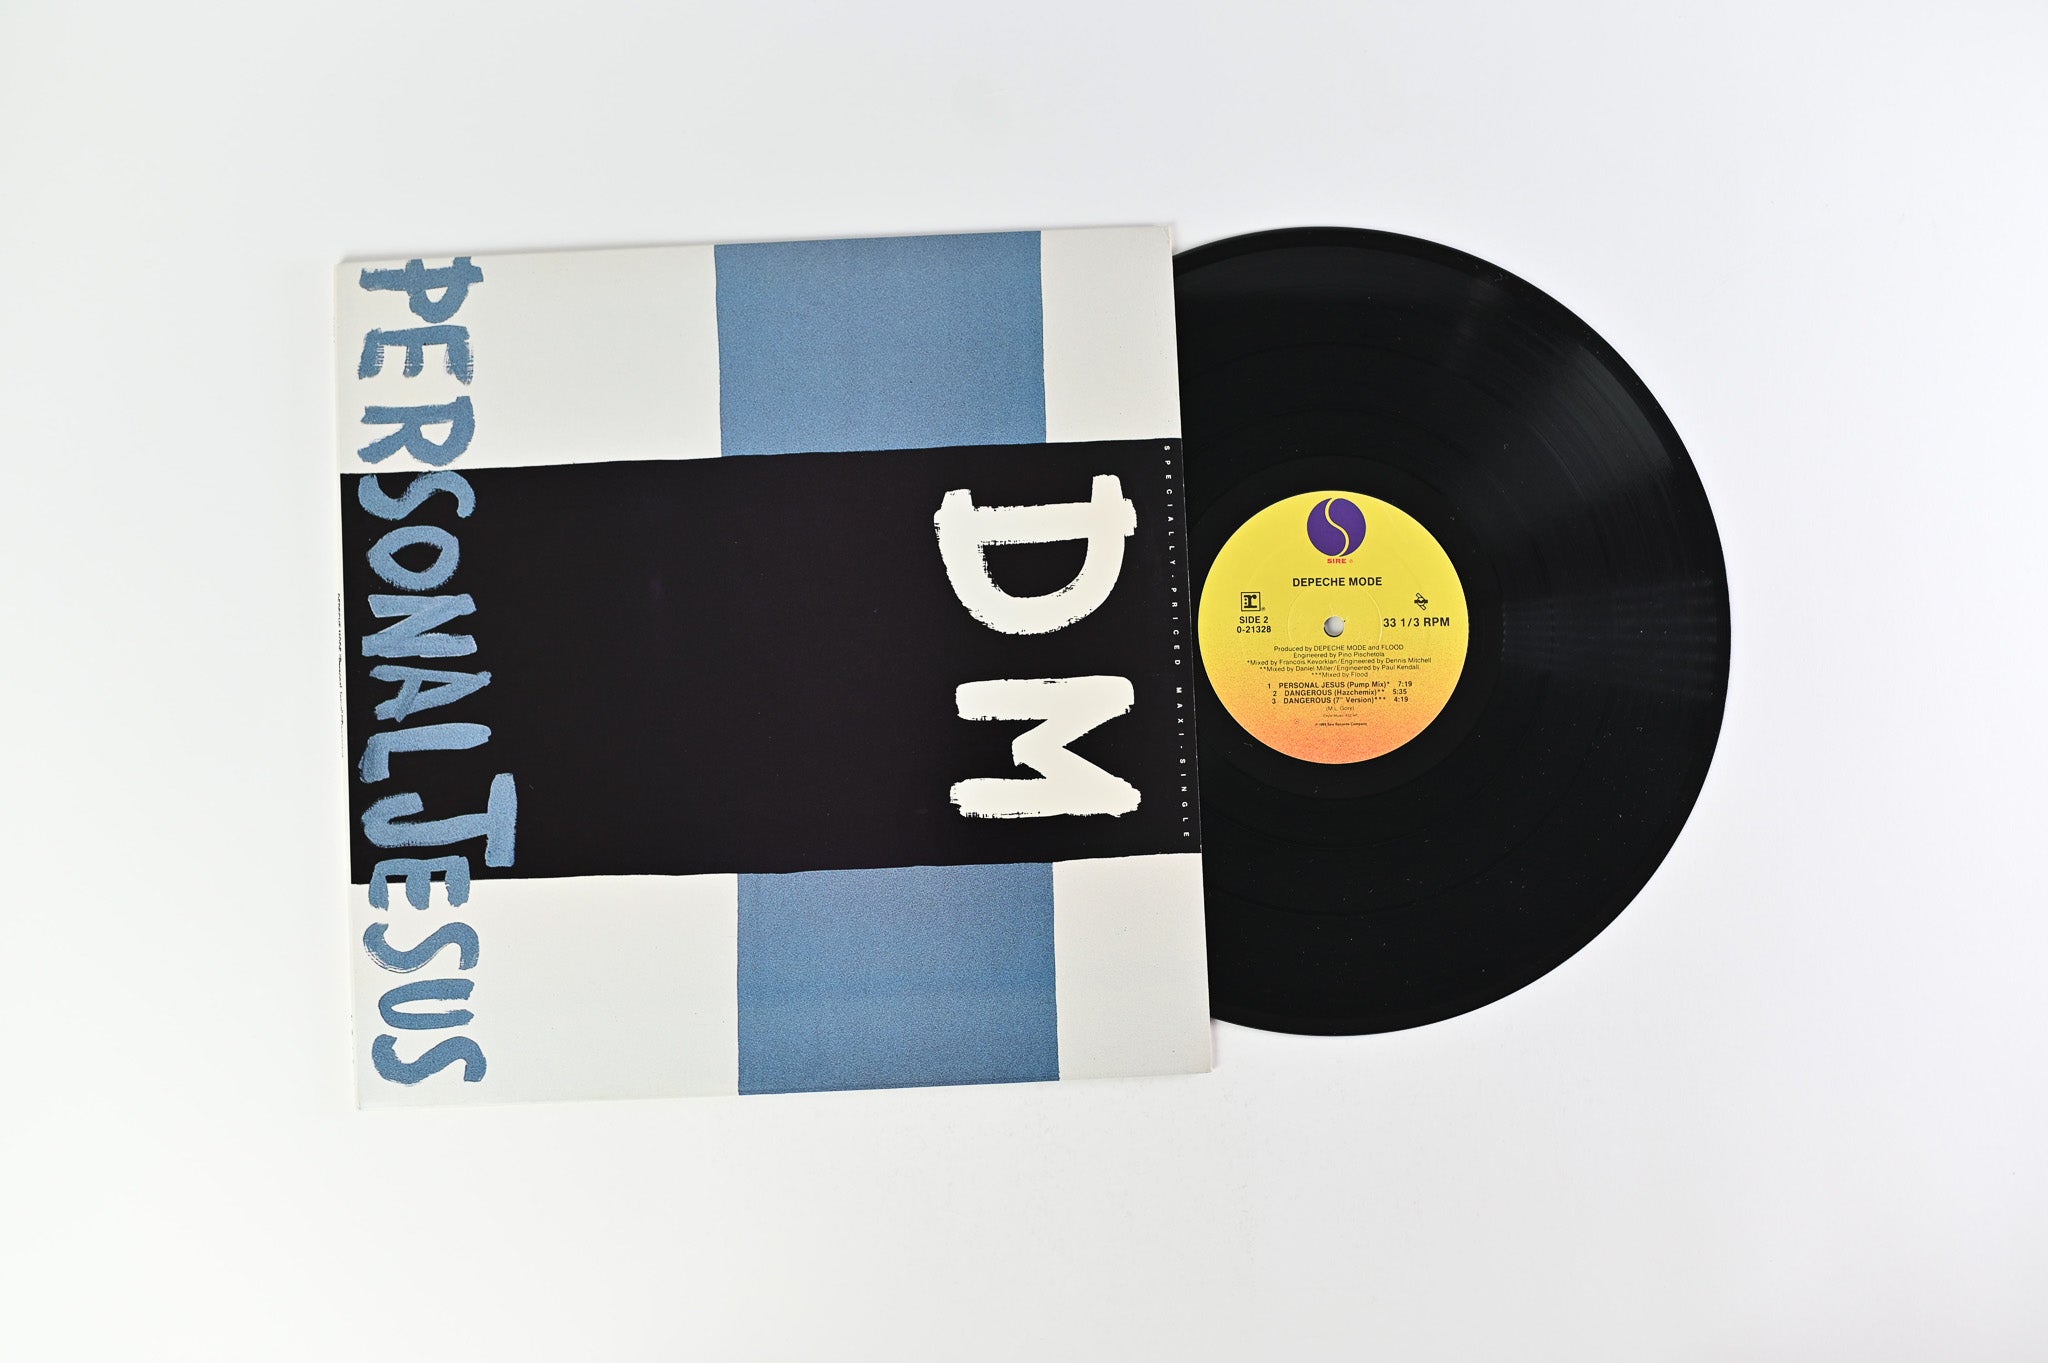 Depeche Mode - Personal Jesus on Sire 12" Maxi-Single